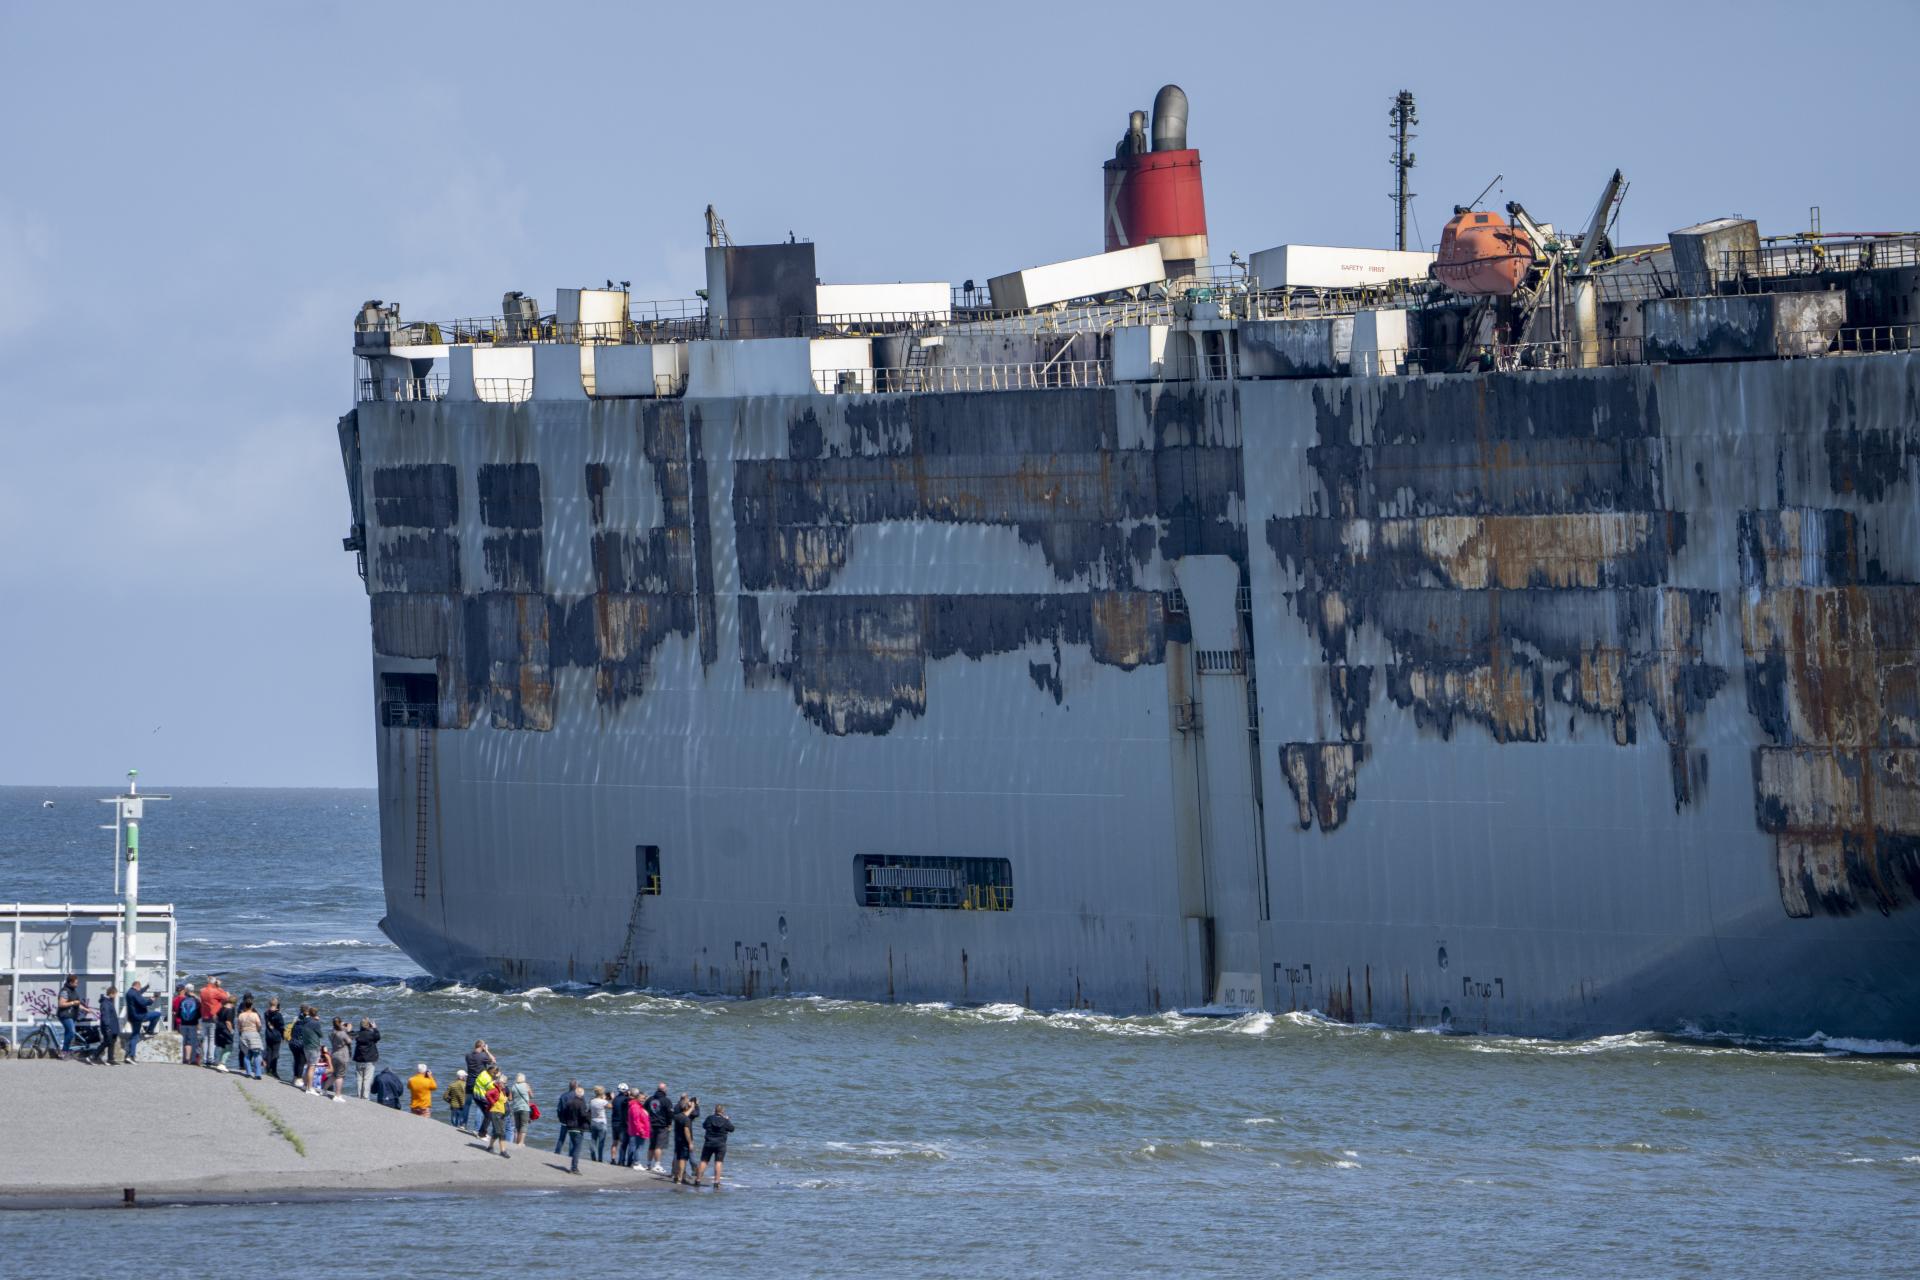 Požiarom poškodená loď s vozidlami zakotvila v holandskom prístave, zomrel člen posádky (foto)